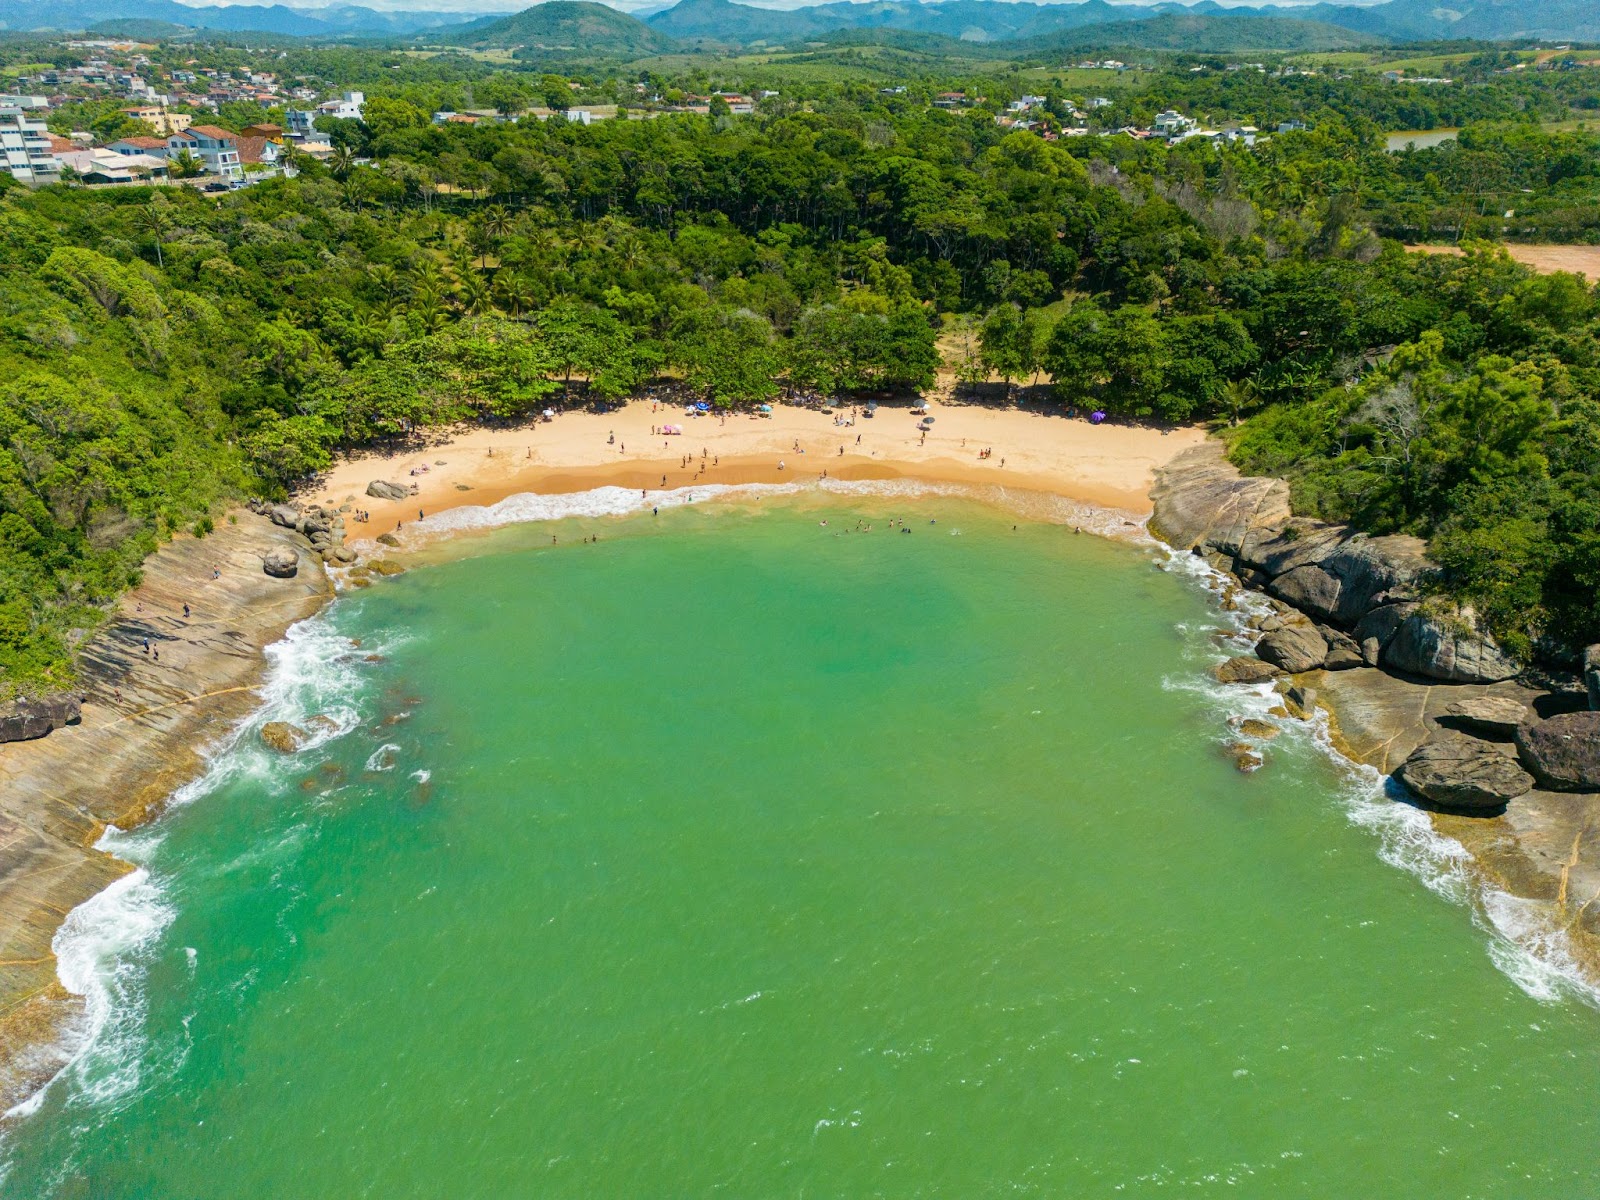 Vista aérea panorâmica das praias de Bacutia, Peracanga e dos Padres. Faixa de areia em formato de concha levemente centralizado na imagem, com mar esverdeado à sua frente.